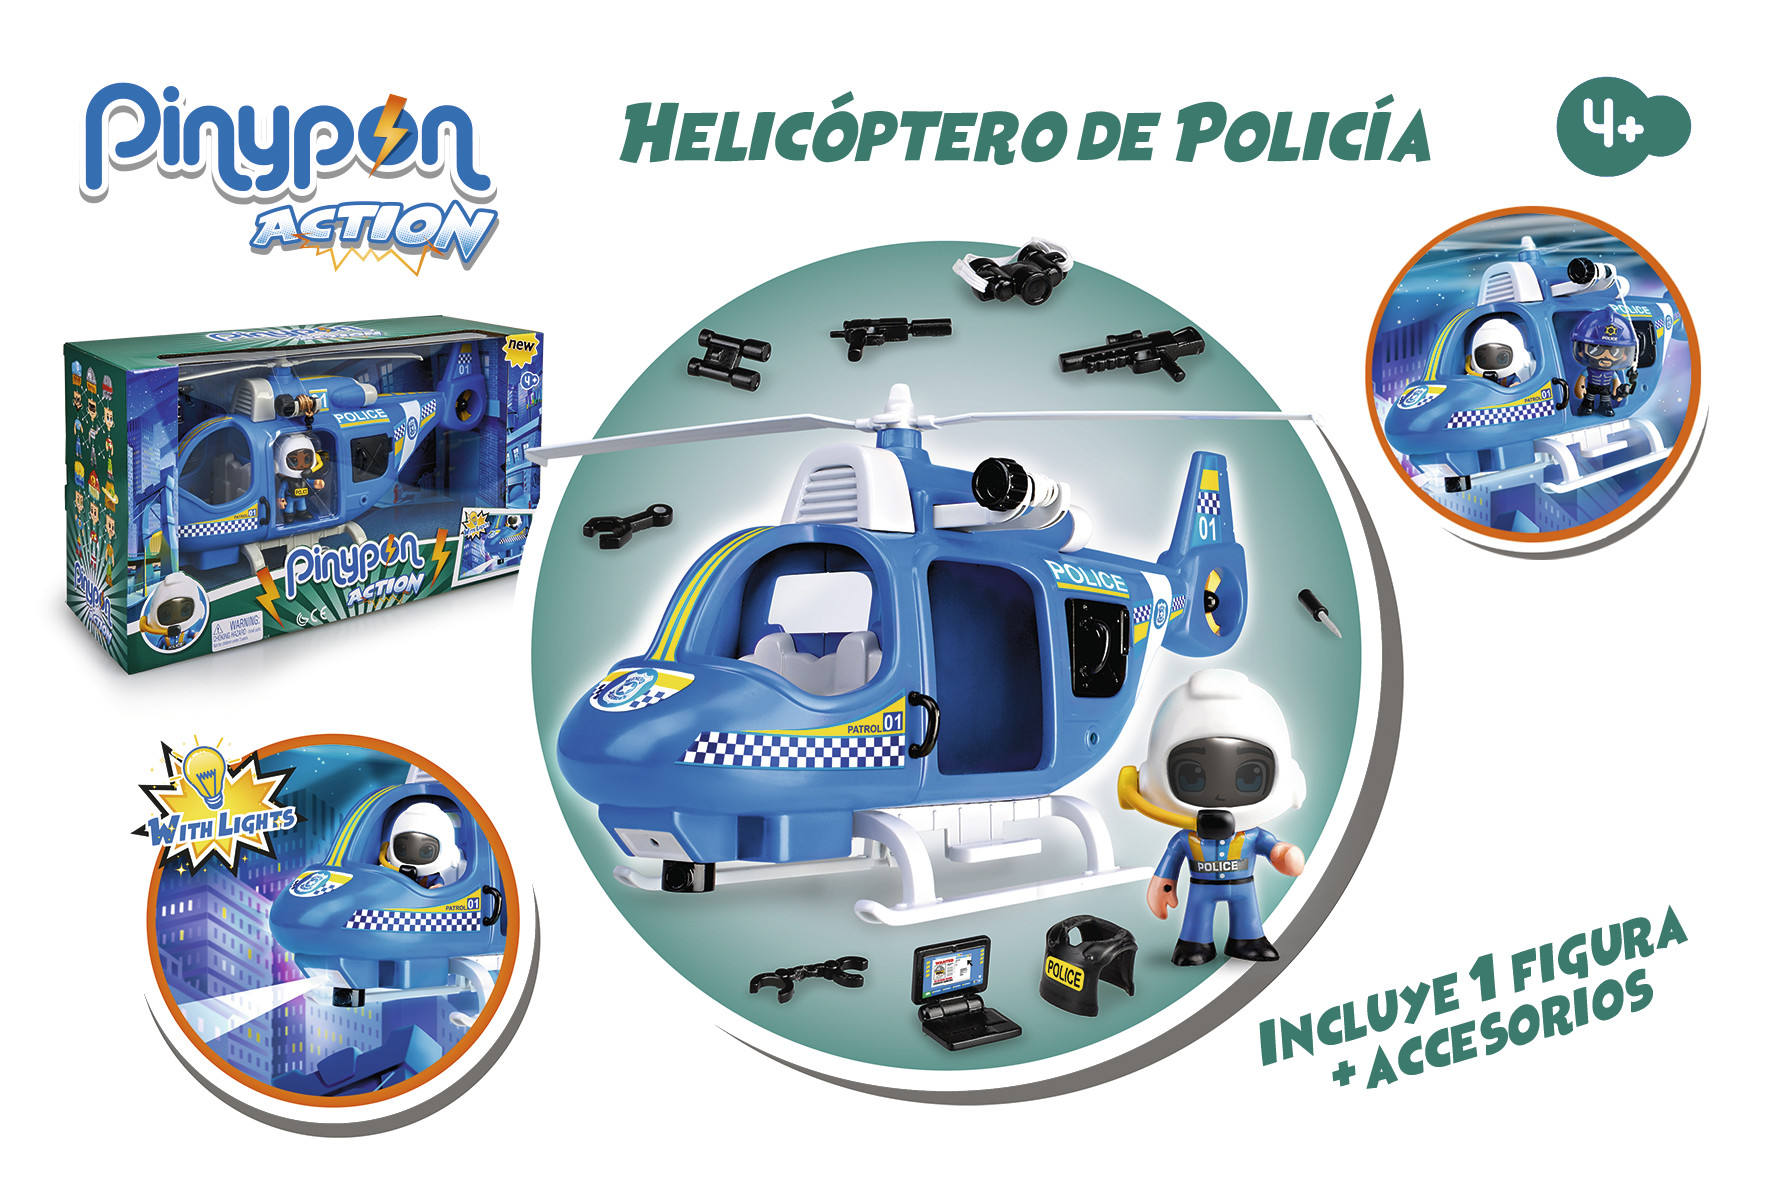 PINYPON ACTION HELICOPTERO DE POLICIA 700014782 - N63521